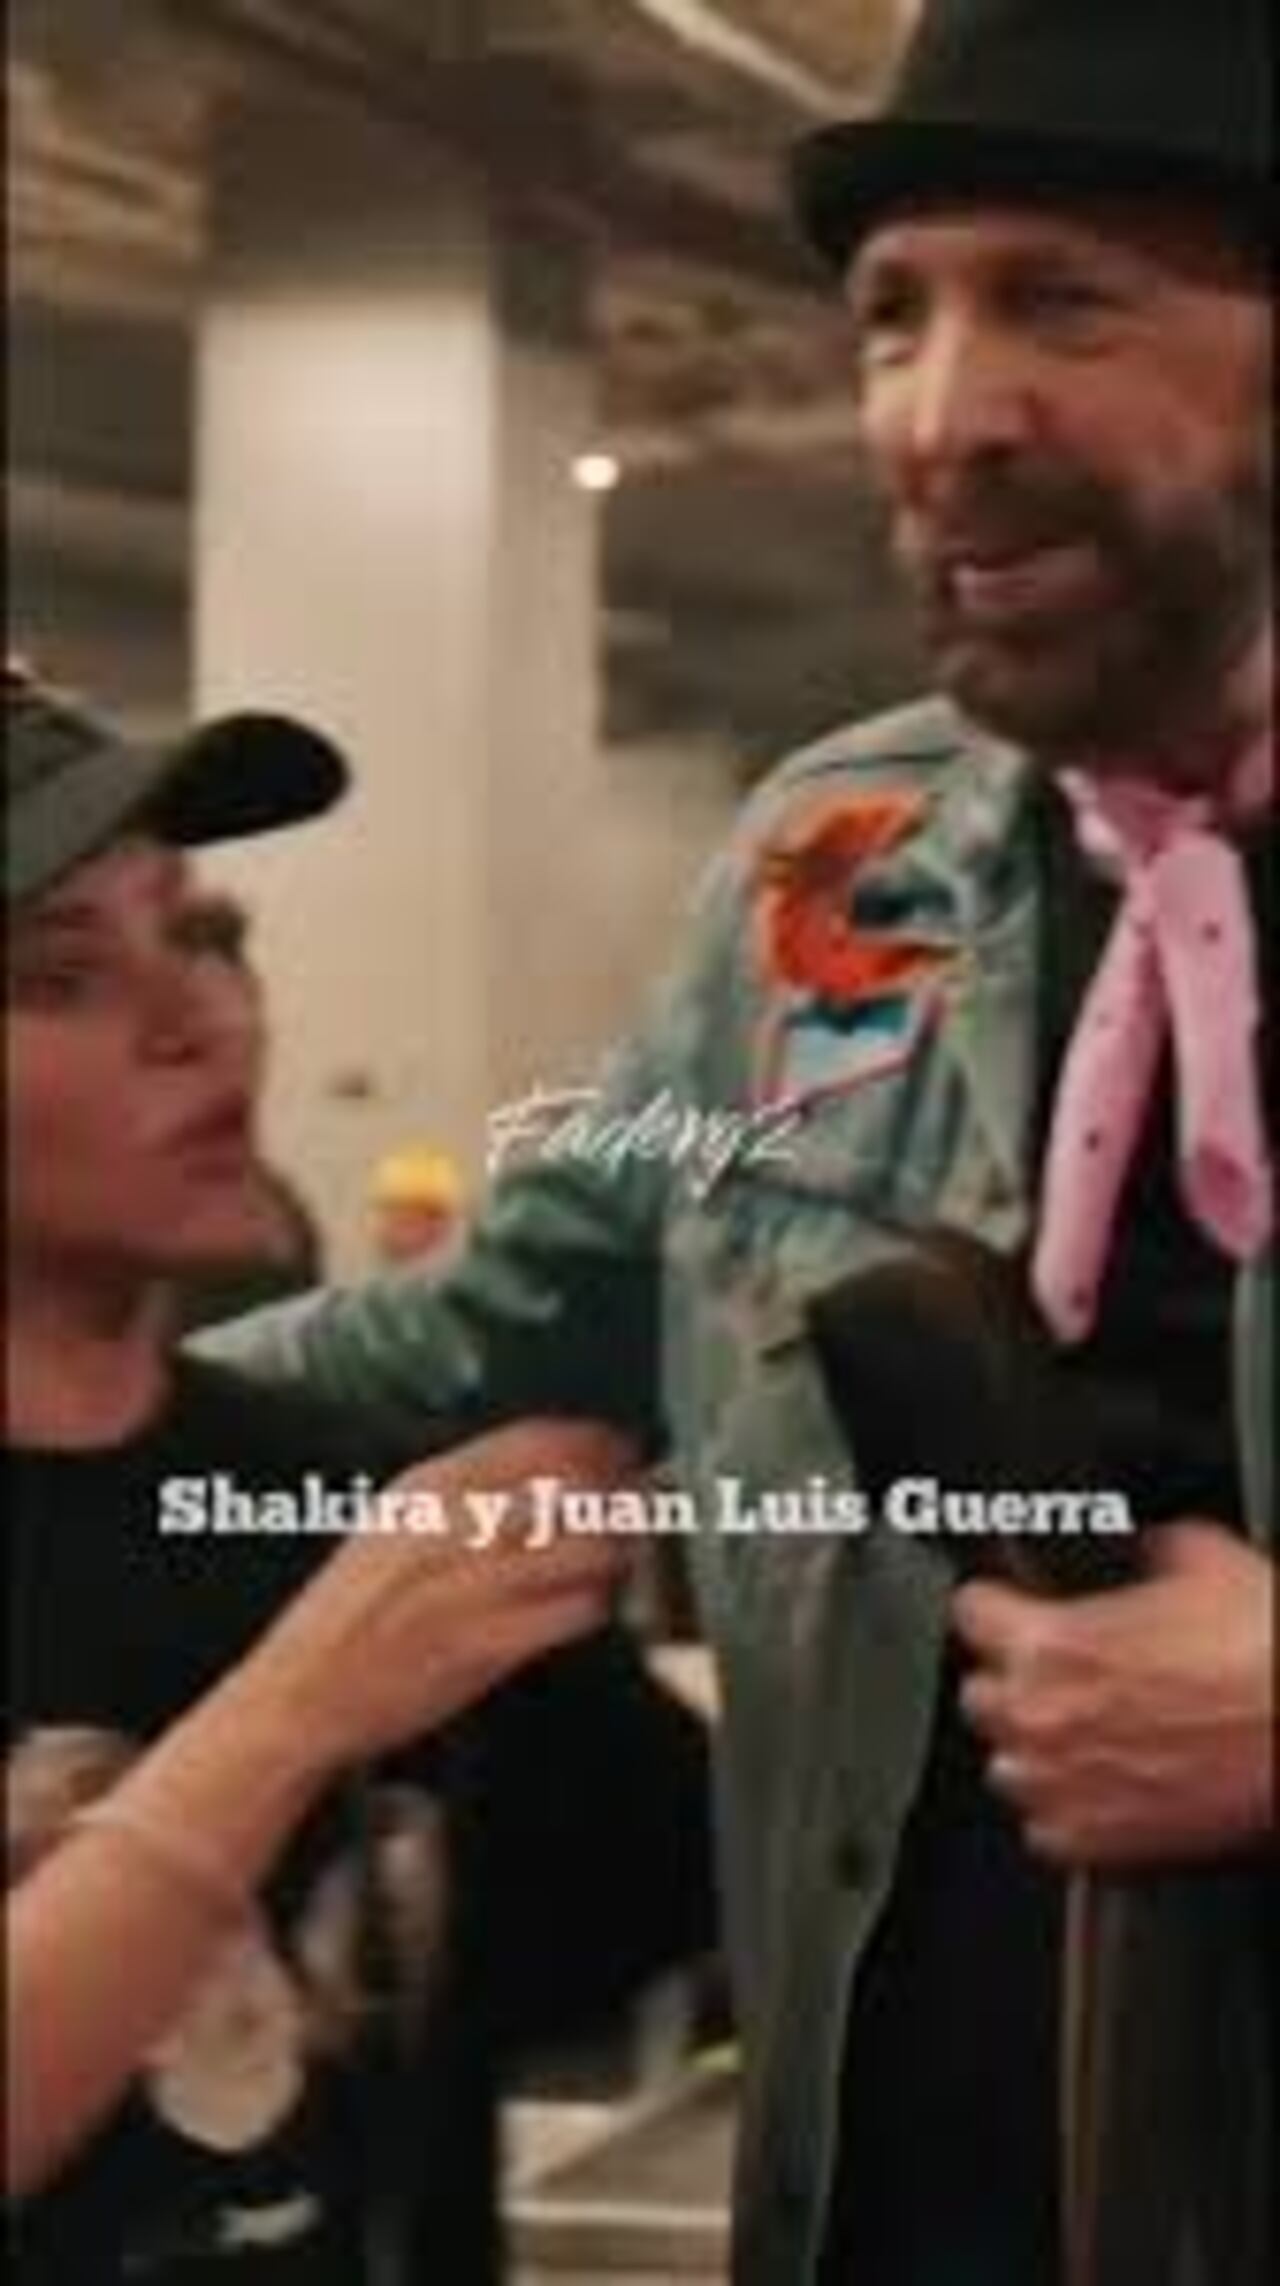 Shakira y Juan Luis Guerra